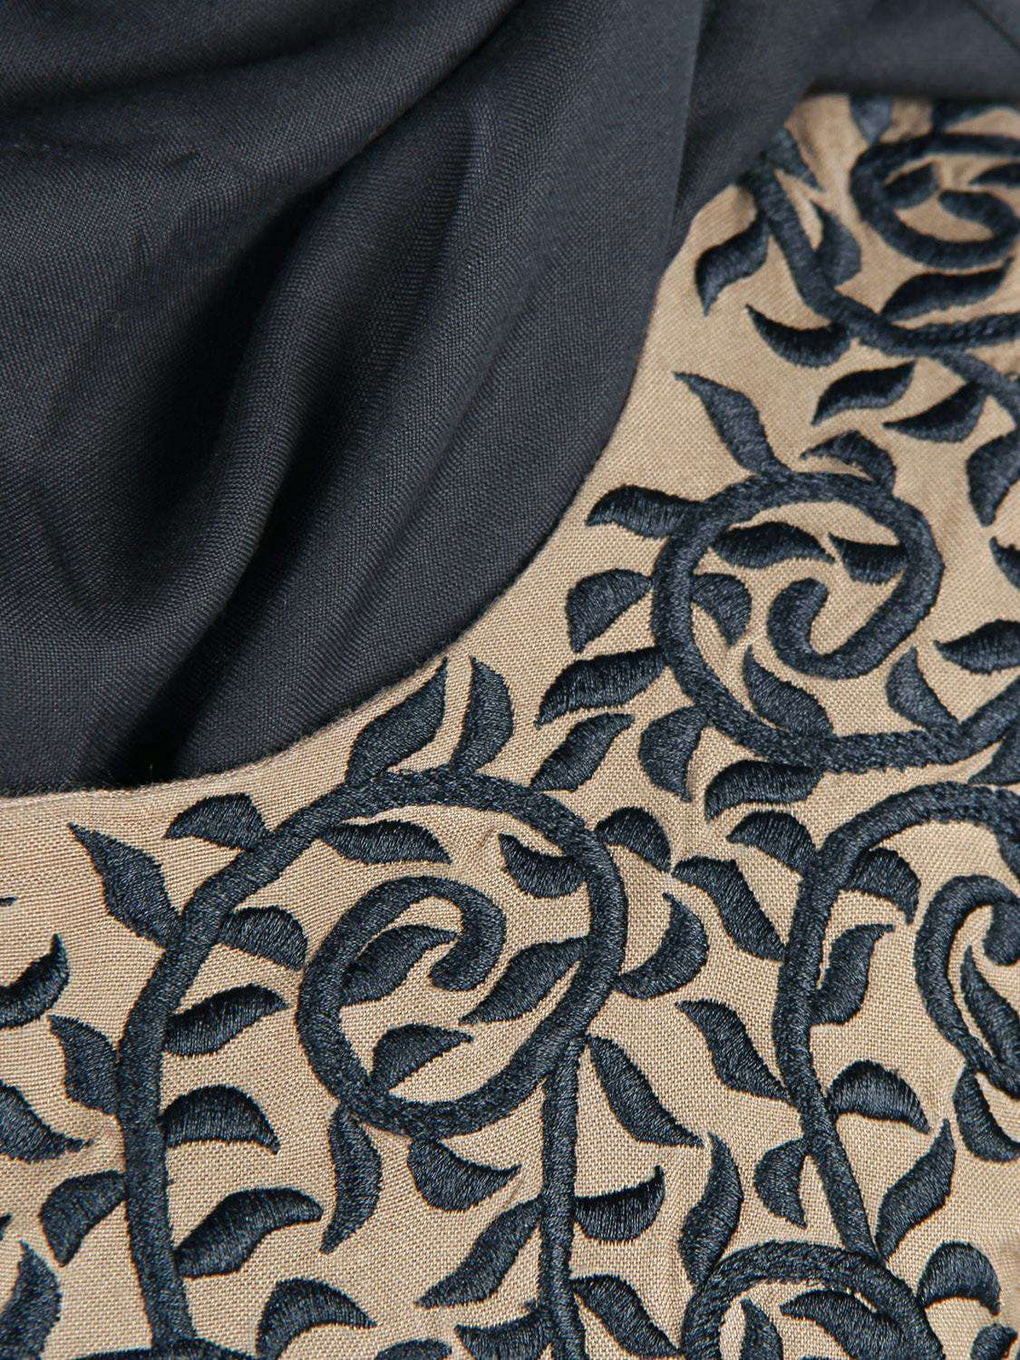 Hirah Rayon Abaya Embroidery Close Look